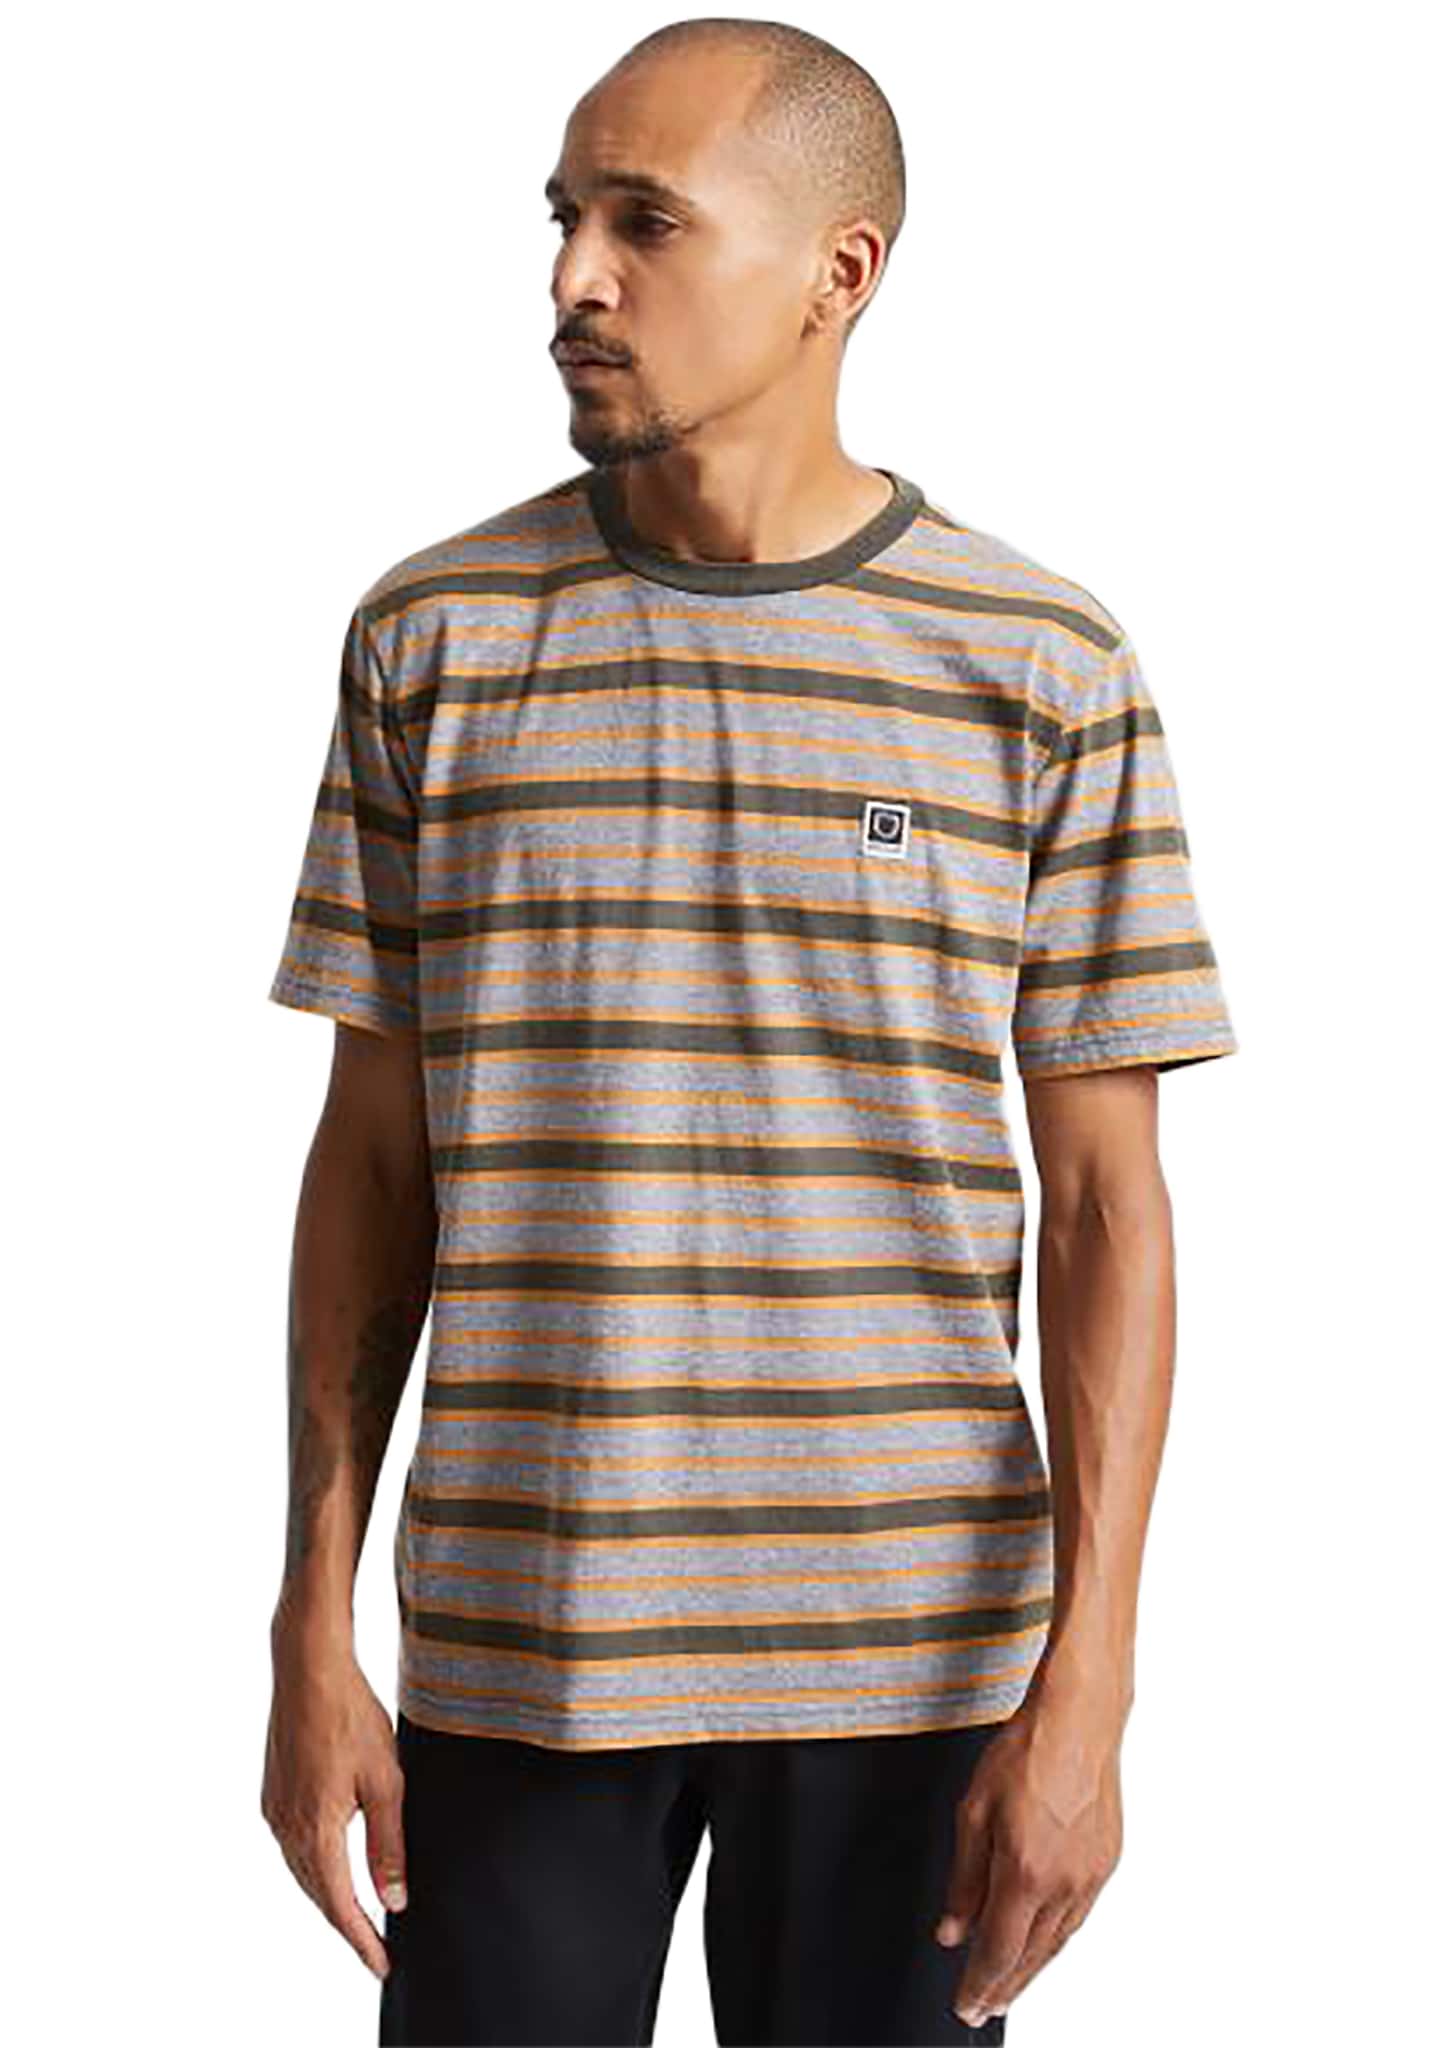 Brixton Hilt Multi Stripe T-Shirt gewaschene schwarze/graue sonne L